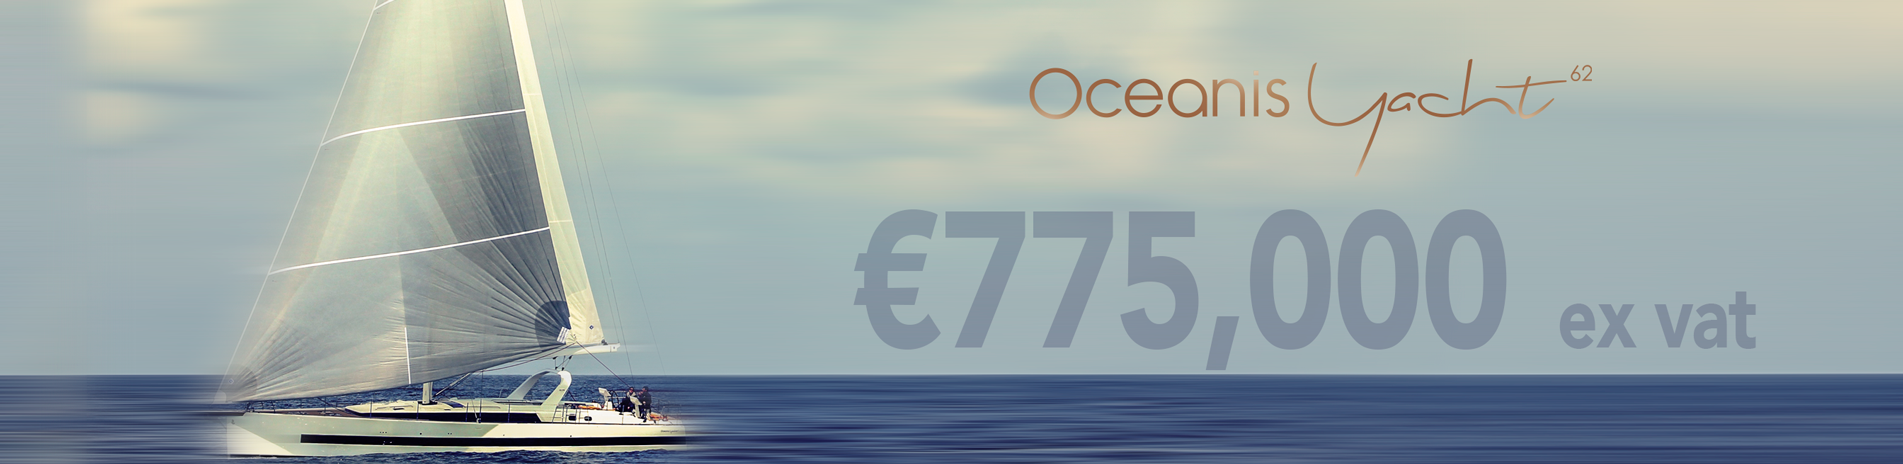 Beneteau Oceanis Yacht 62 Price Register for full price list